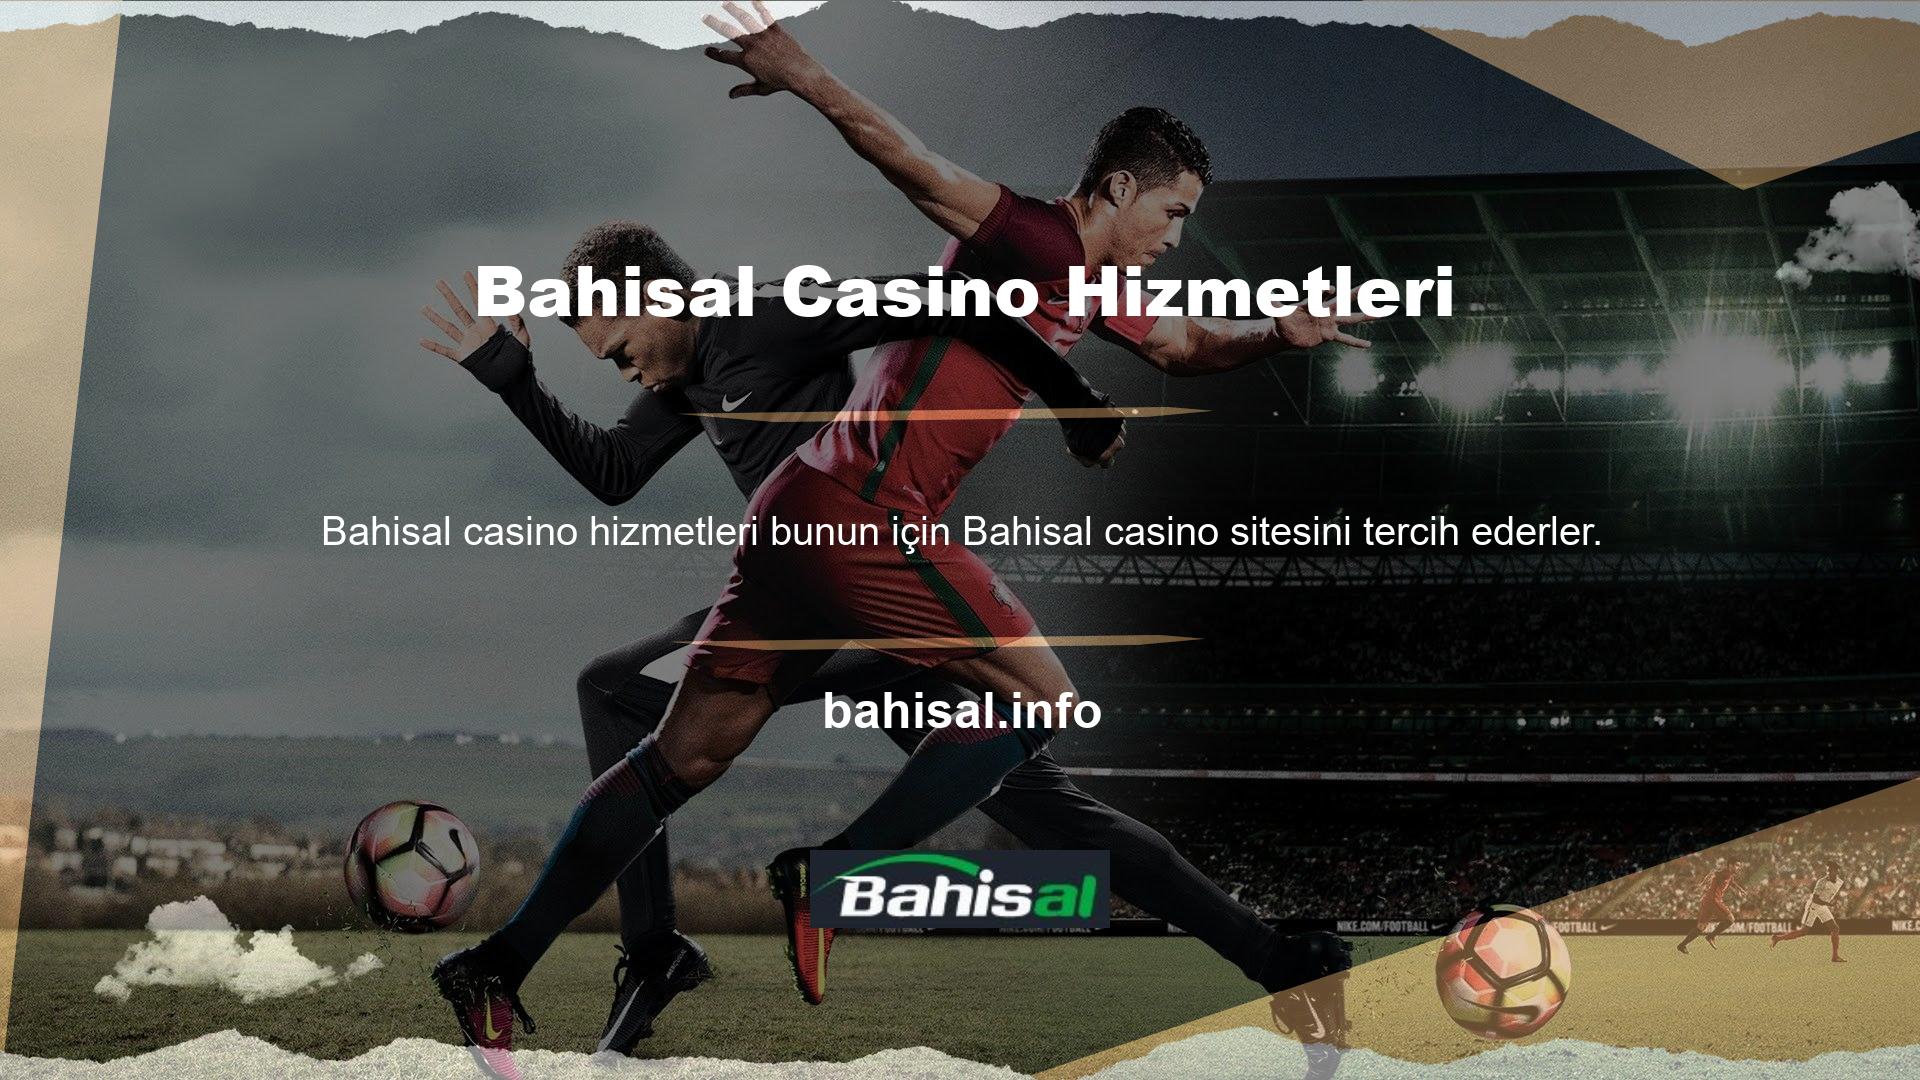 Çünkü Bahisal casino hizmeti bakara nedir web sitesi itibarını hak eden casino sitelerinden biridir